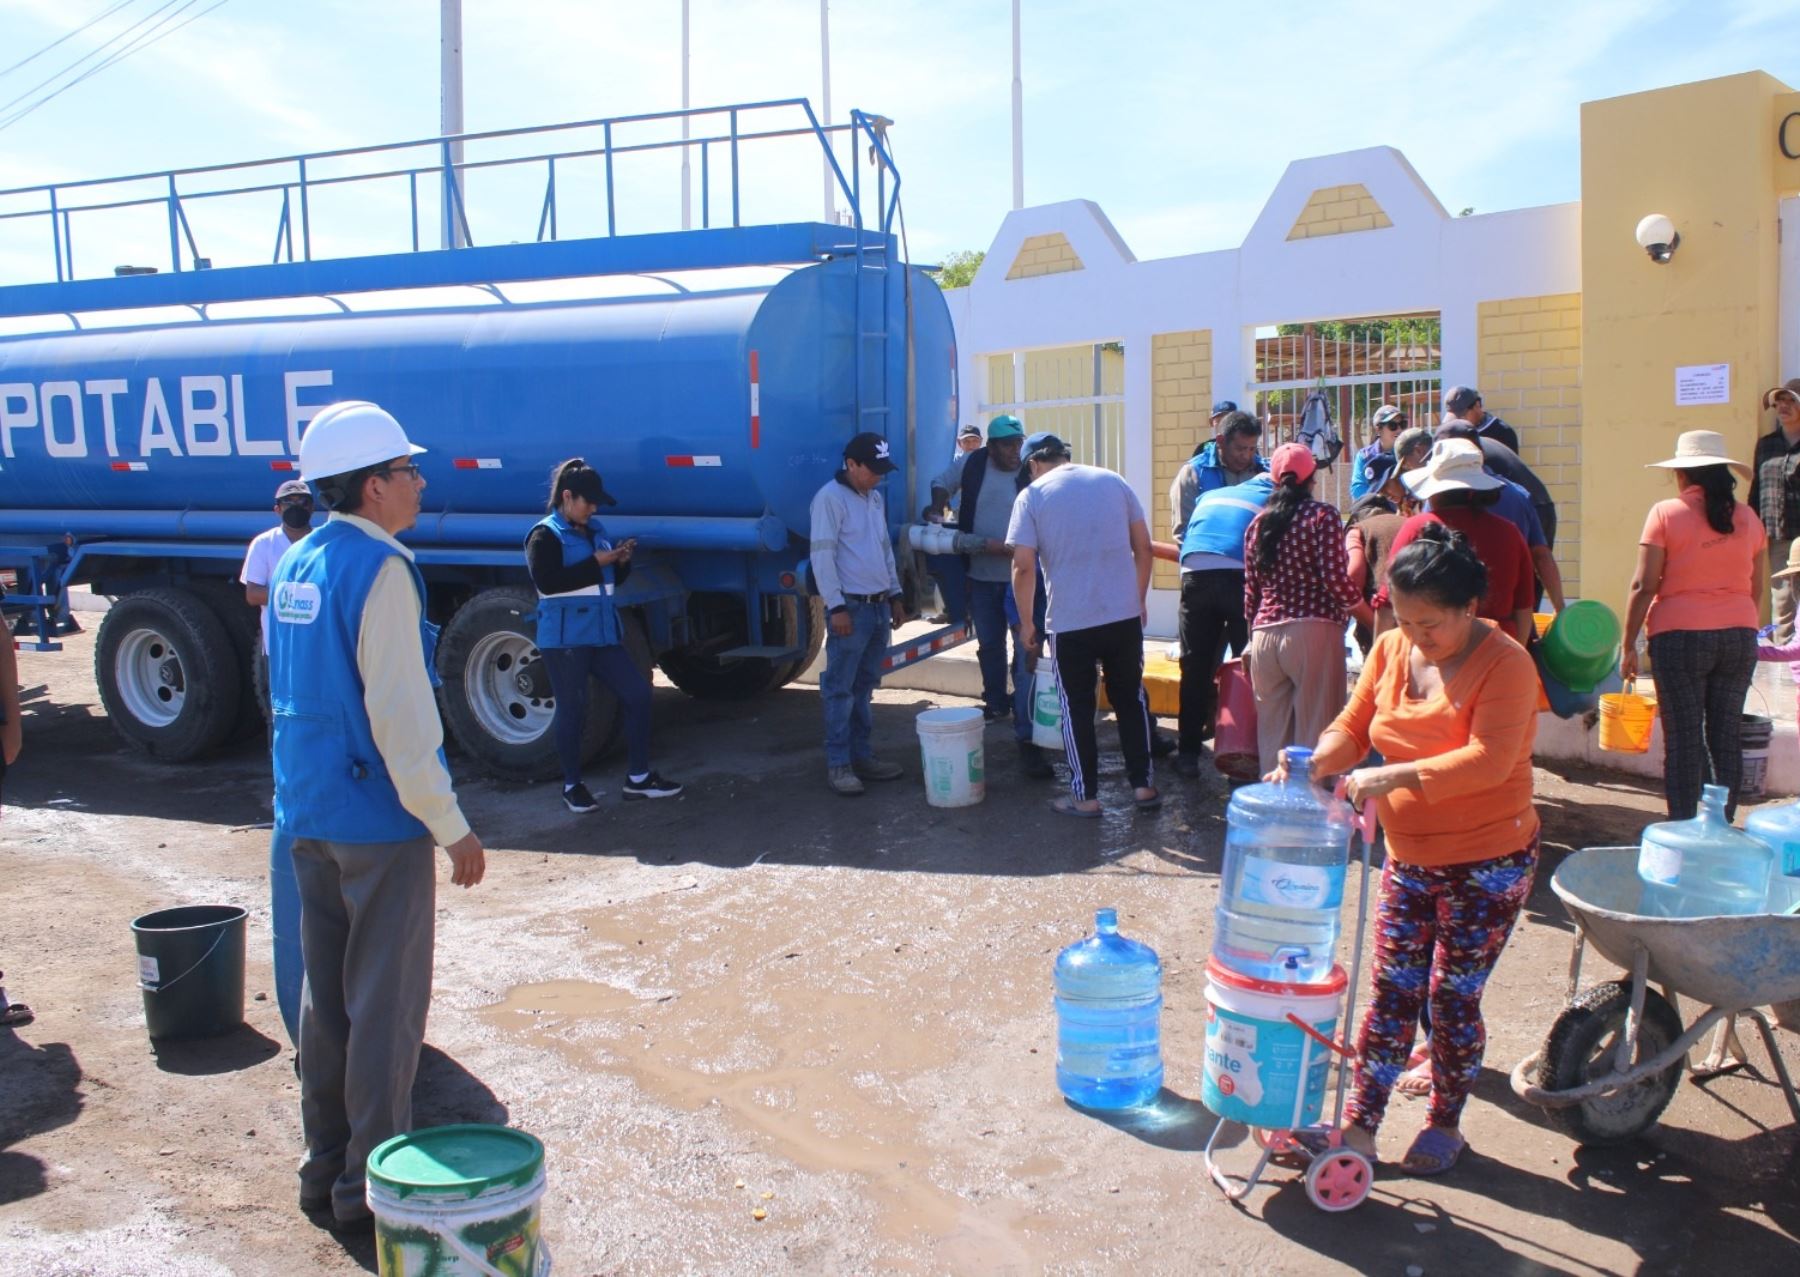 Inspectores de la Sunass monitorean el abastecimiento de agua potable a través de camiones cisterna en Moquegua, debido al corte del servicio a causa del derrame de petróleo registrado en dicha región.